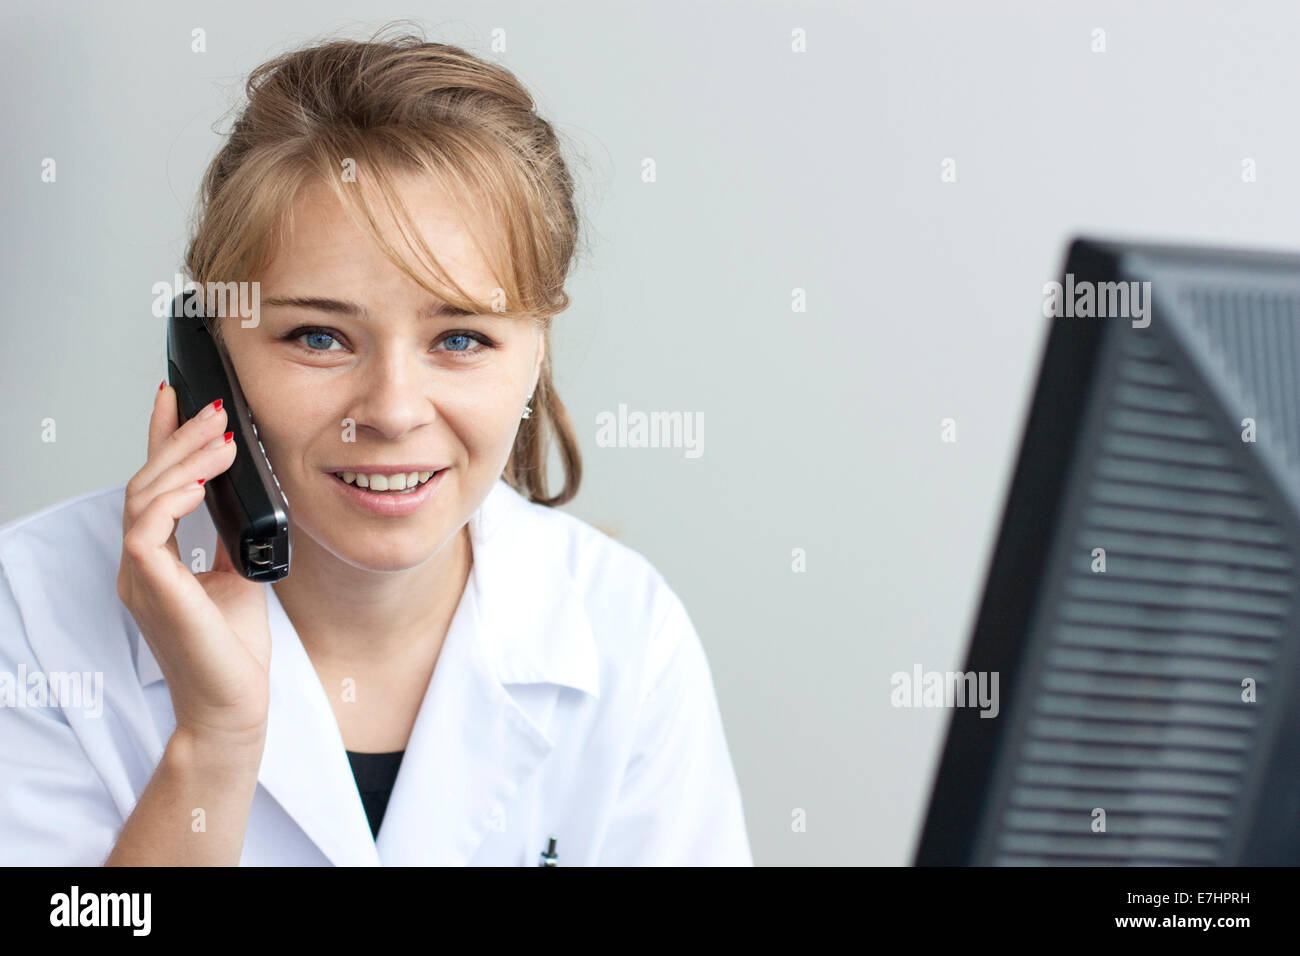 Immagine ravvicinata di bella donna farmacista tenendo il telefono e guardando con sorriso alla telecamera Foto Stock